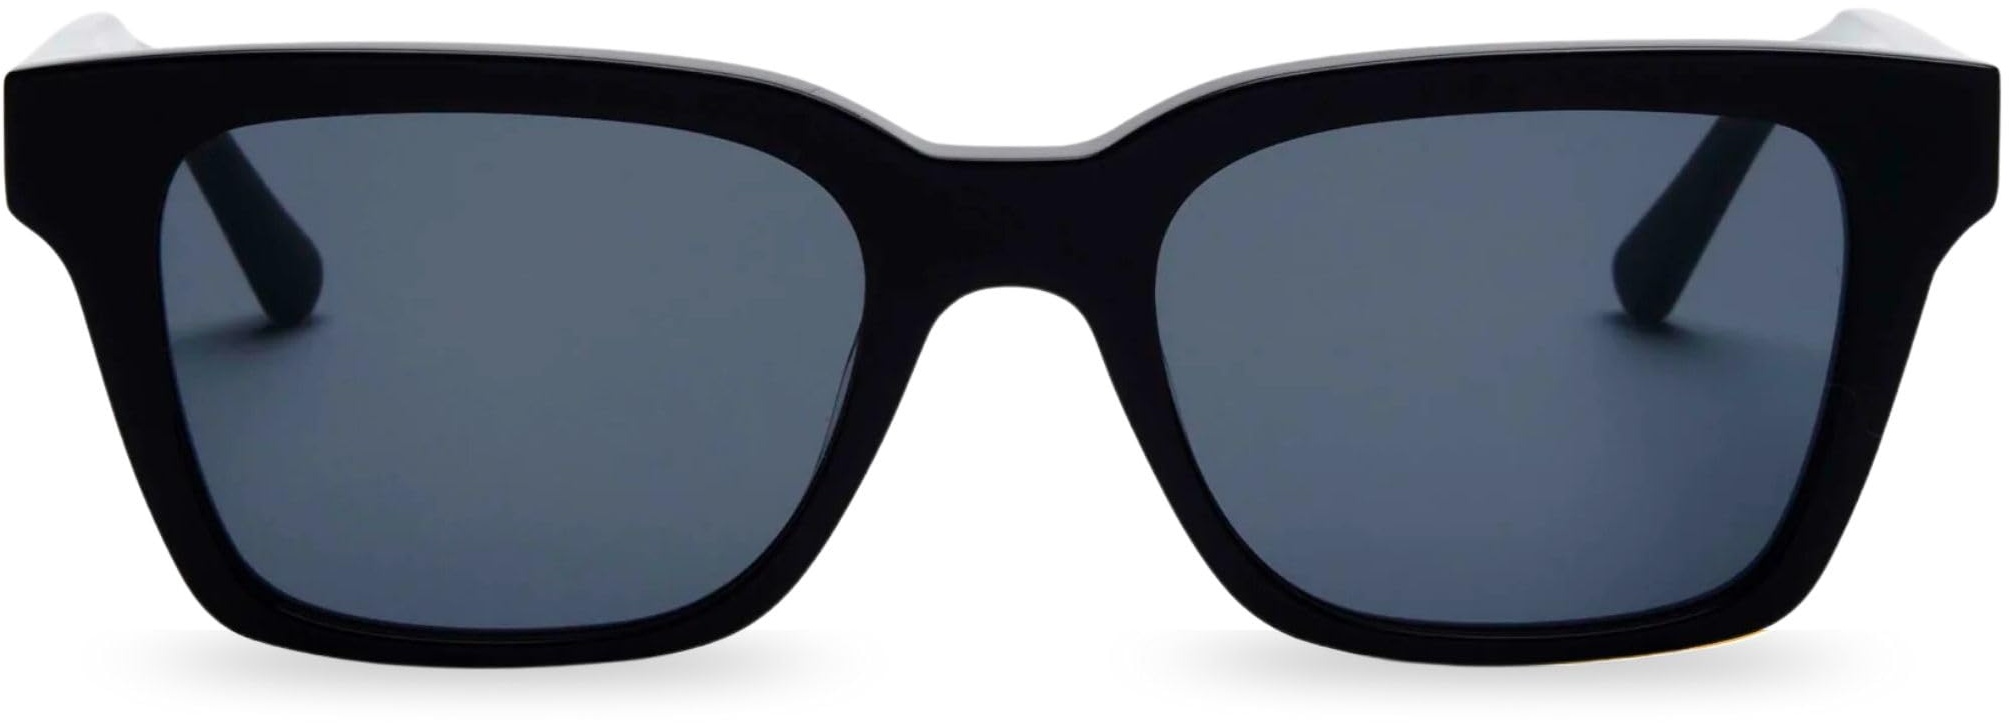 MessyWeekend Sonnenbrille Herren Rechteckig mit handgefertigtem Acetat Rahmen - Gläser mit vollem UV400 Schutz - Designer, Coole, Vintage Sonnenbrille für Männer - Sunglasses Aesthetic Men - DEAN